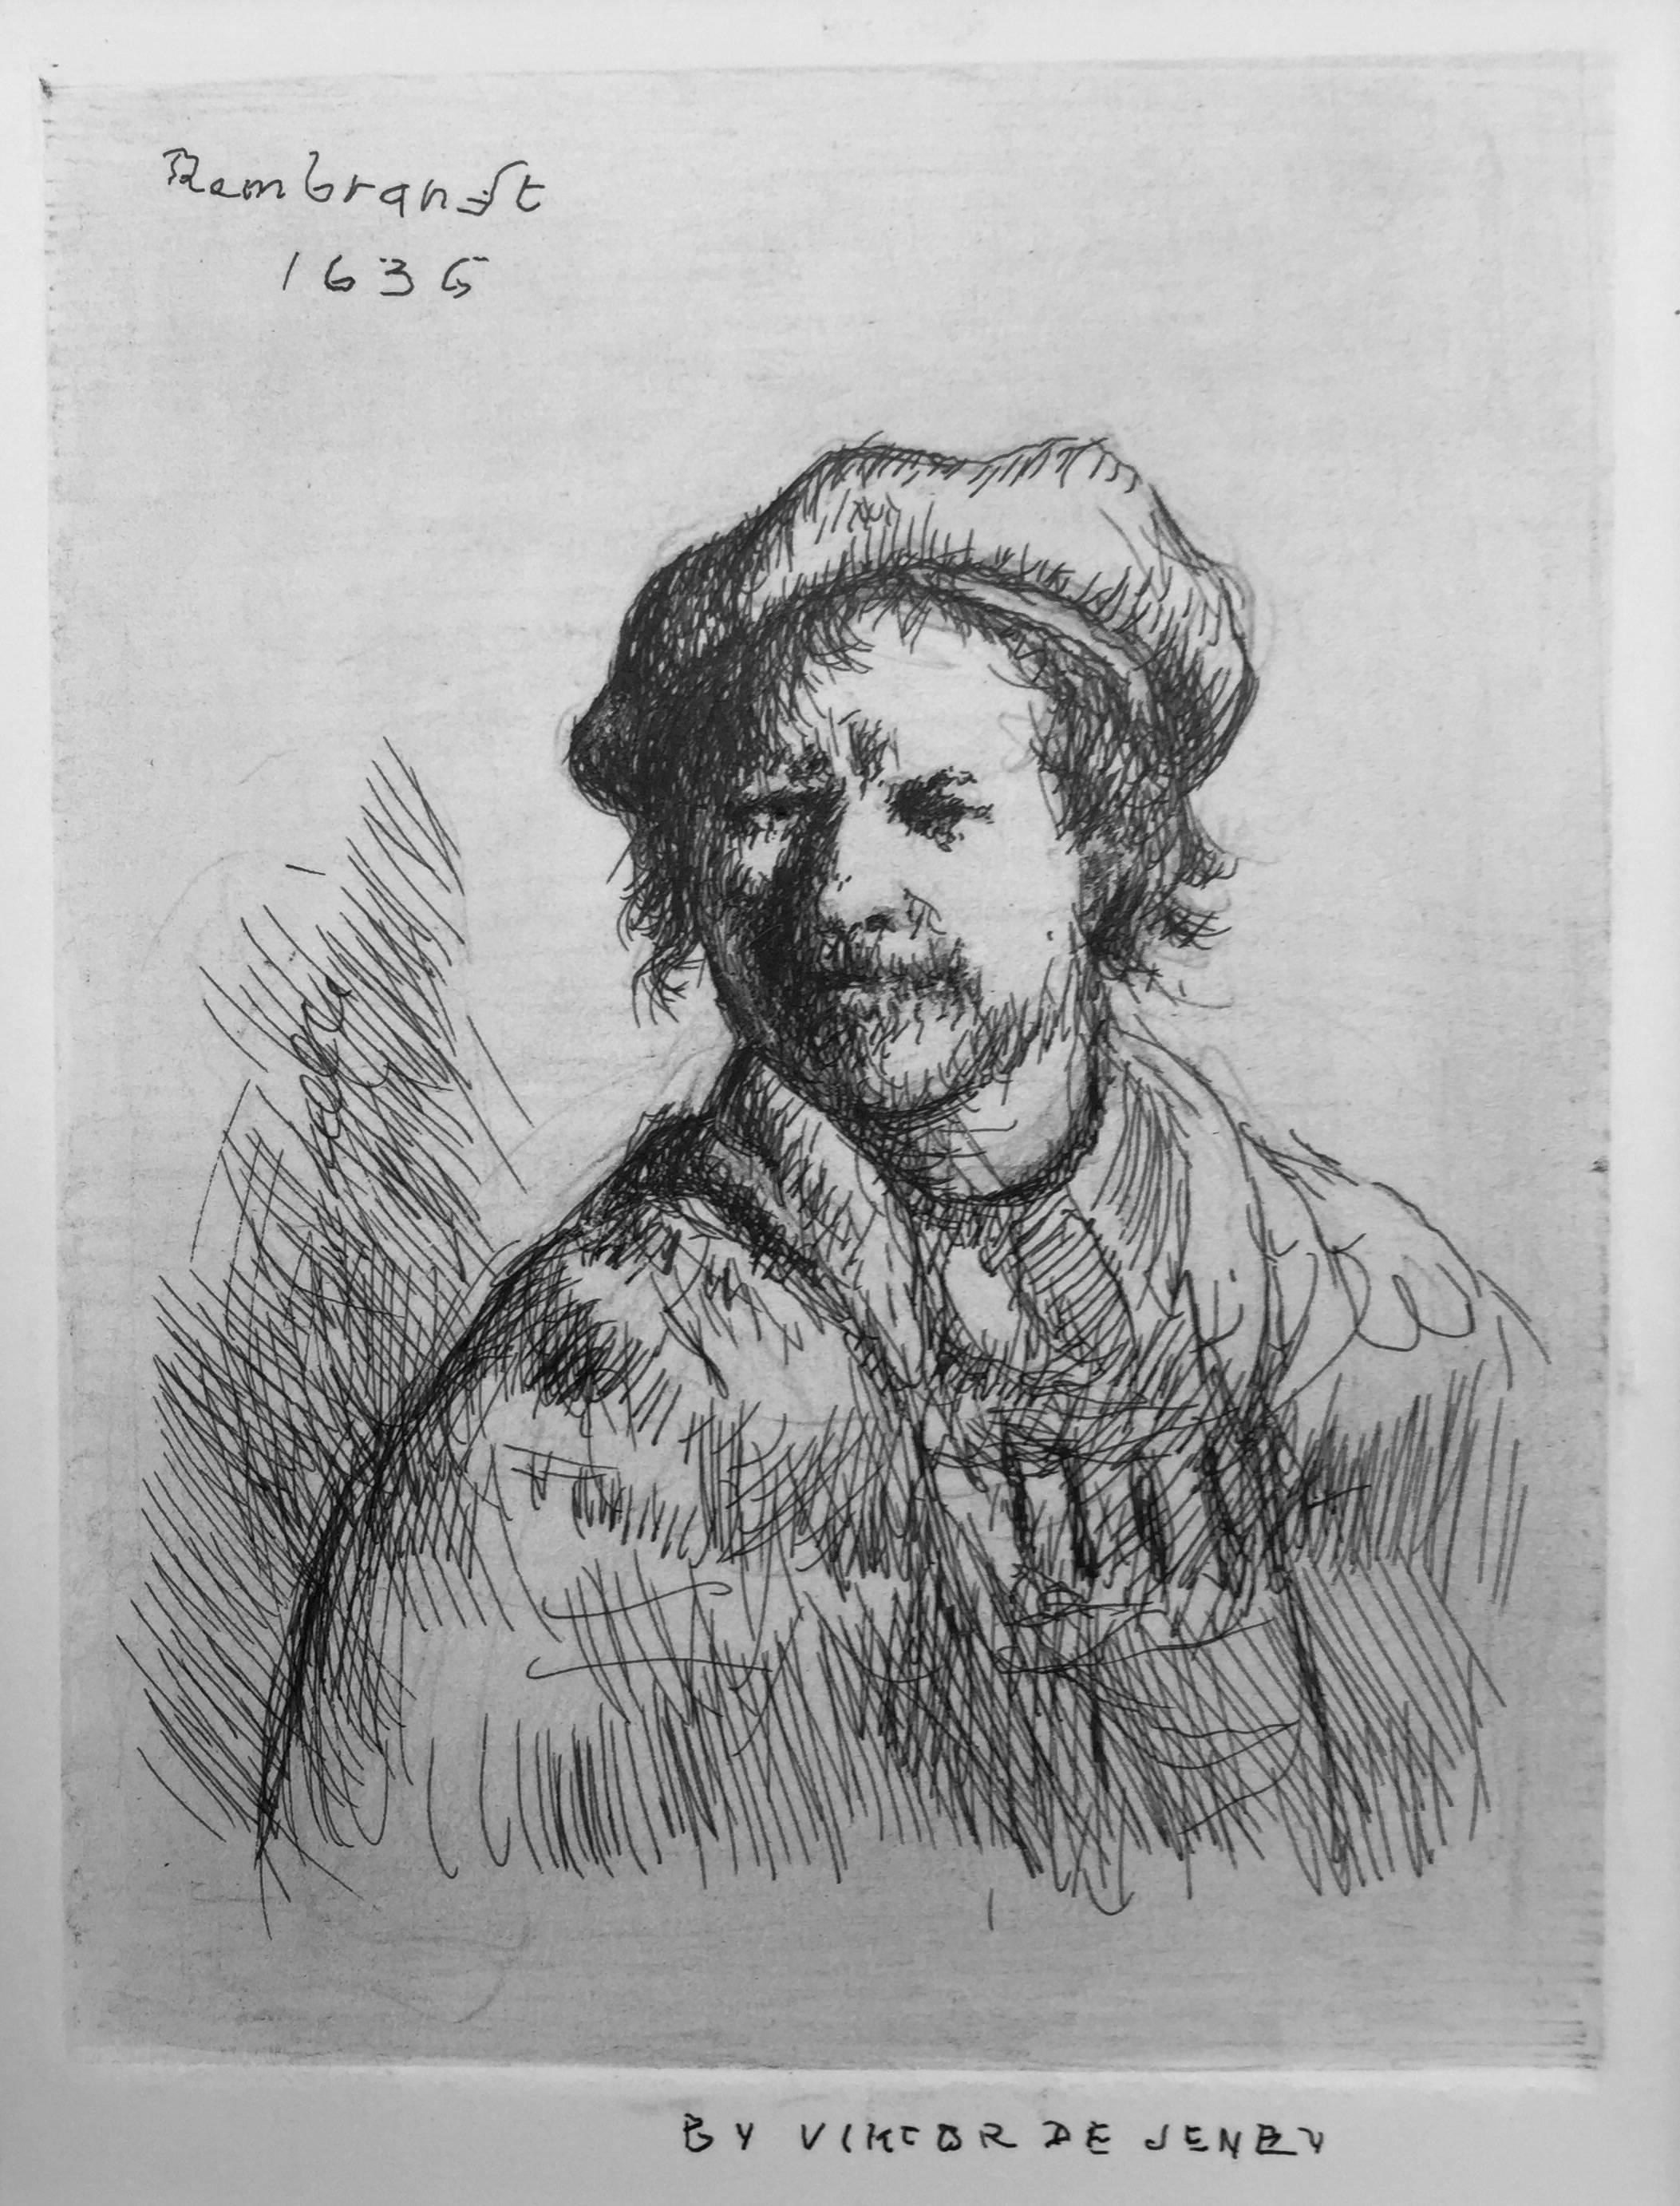 "" Self Portrait de Rembrandt, 1636 "